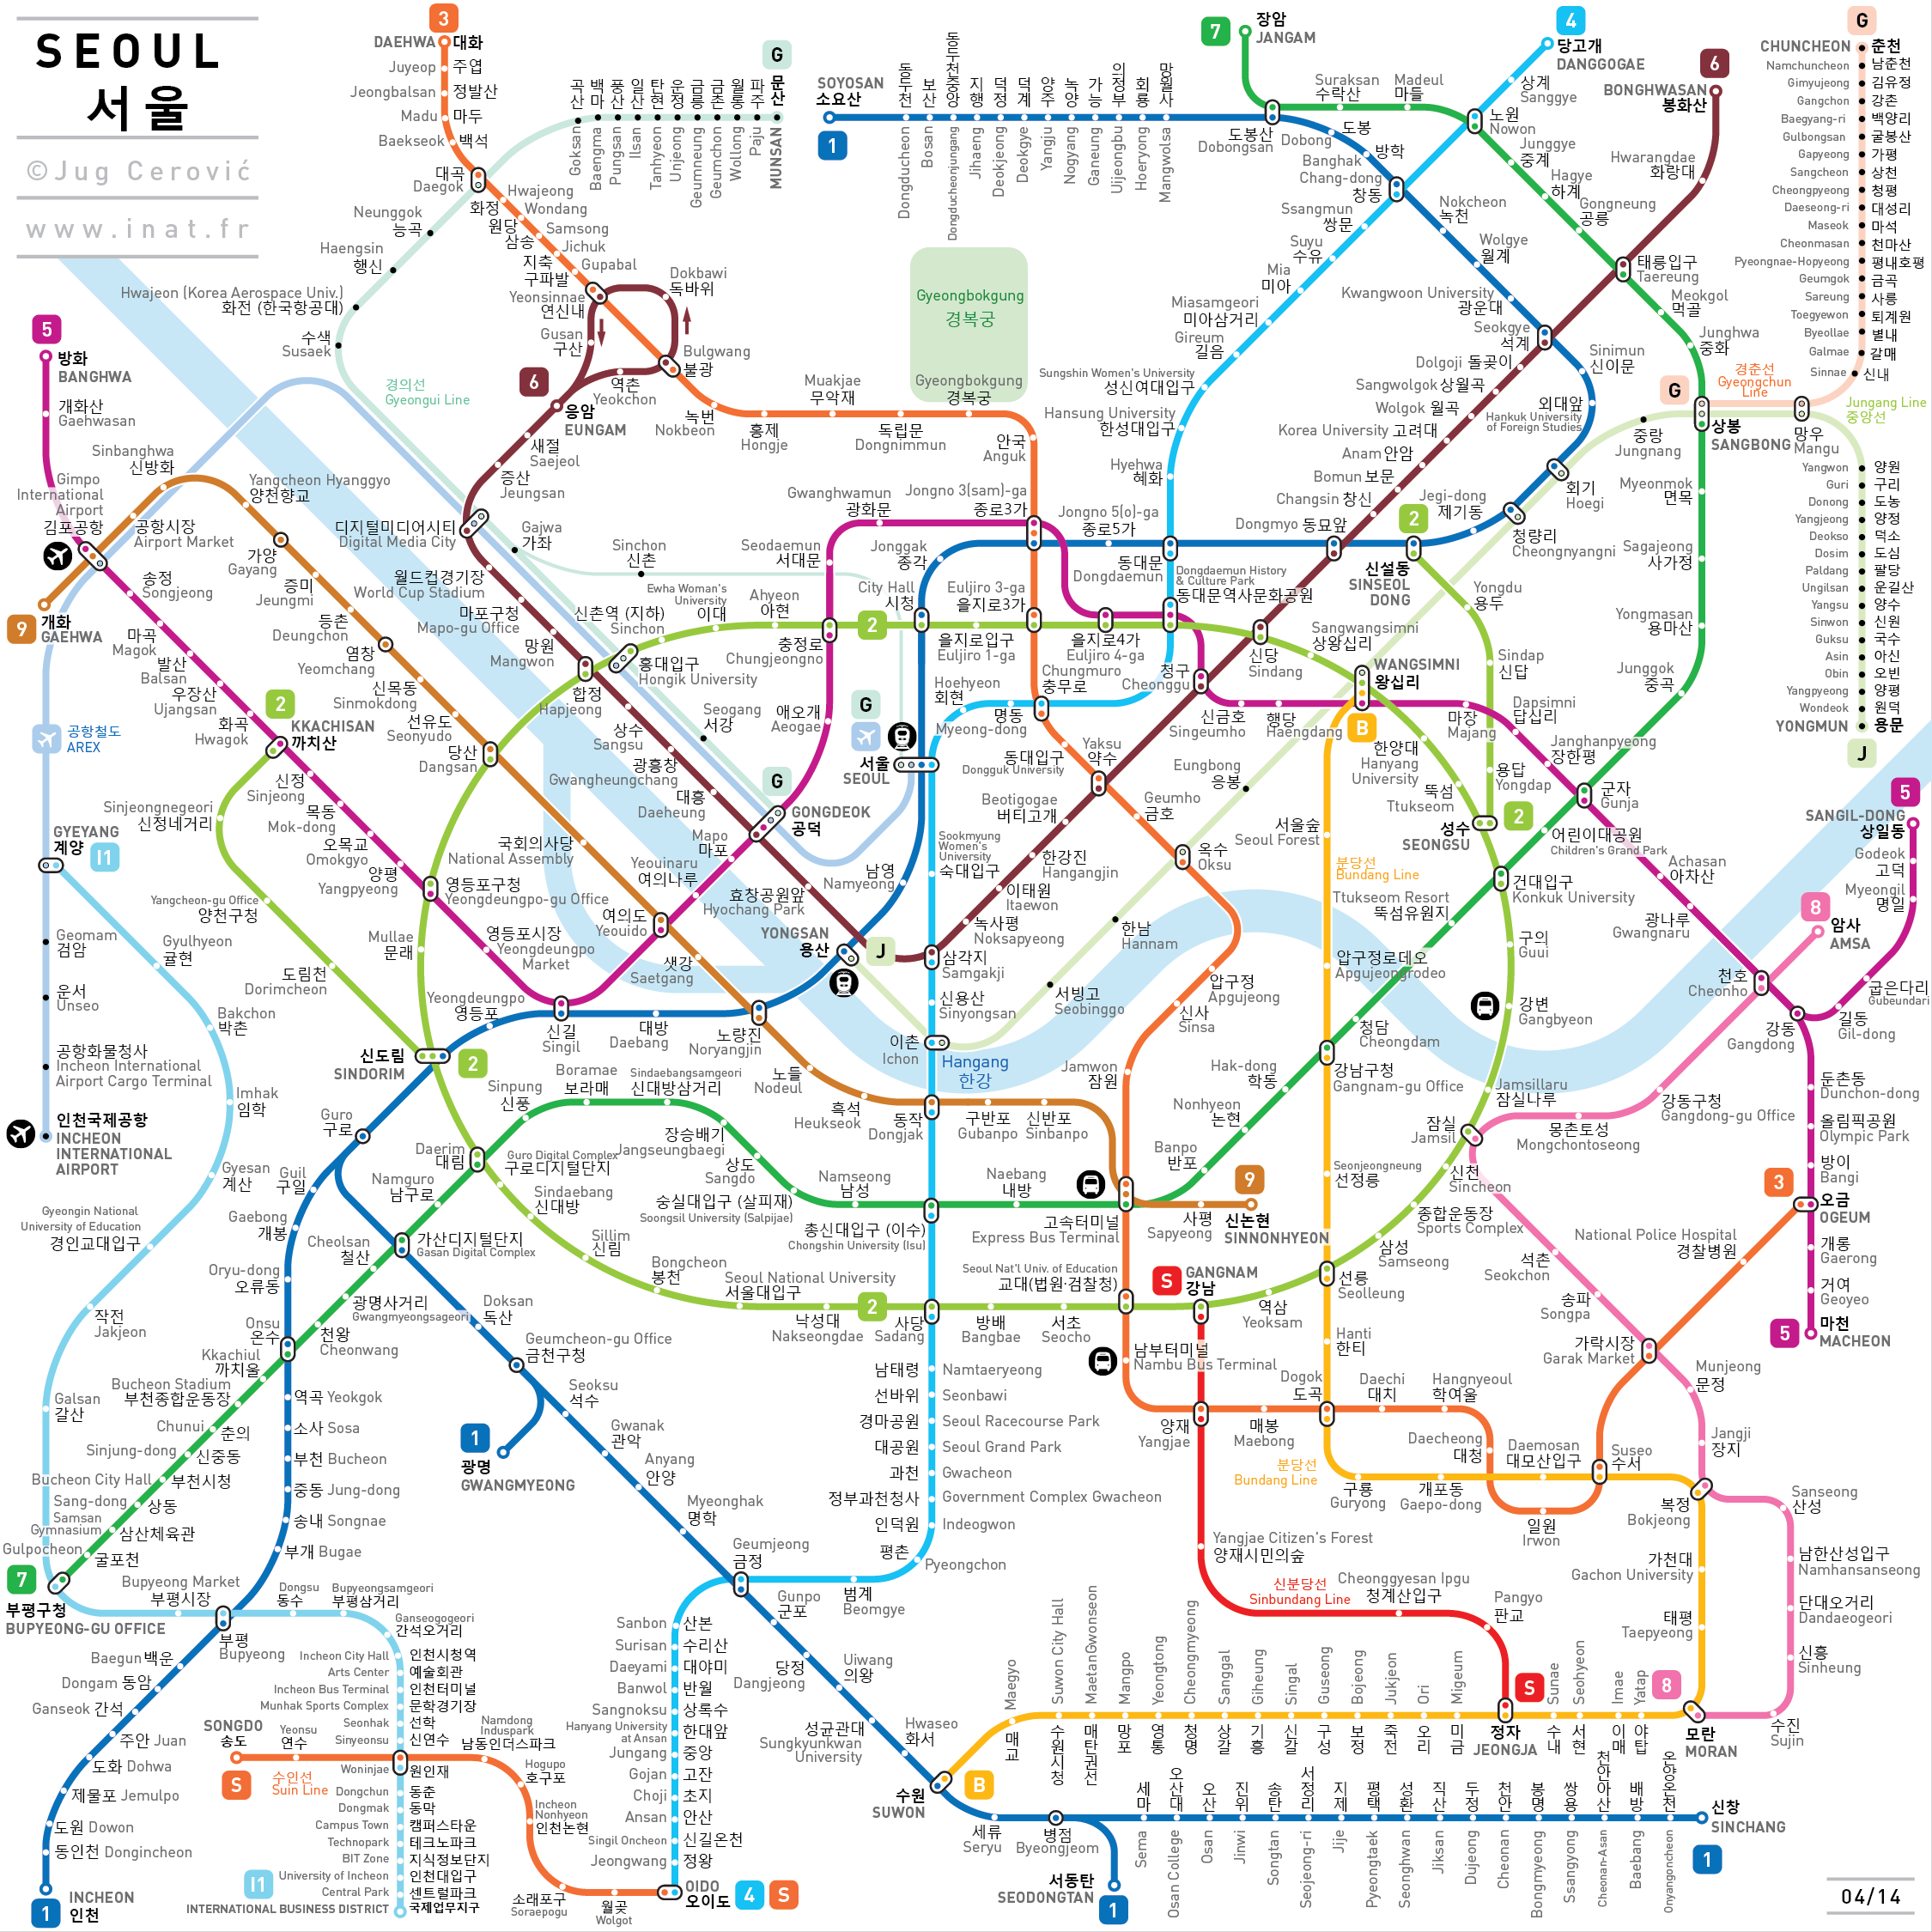 seoul-metro-subway-map.png